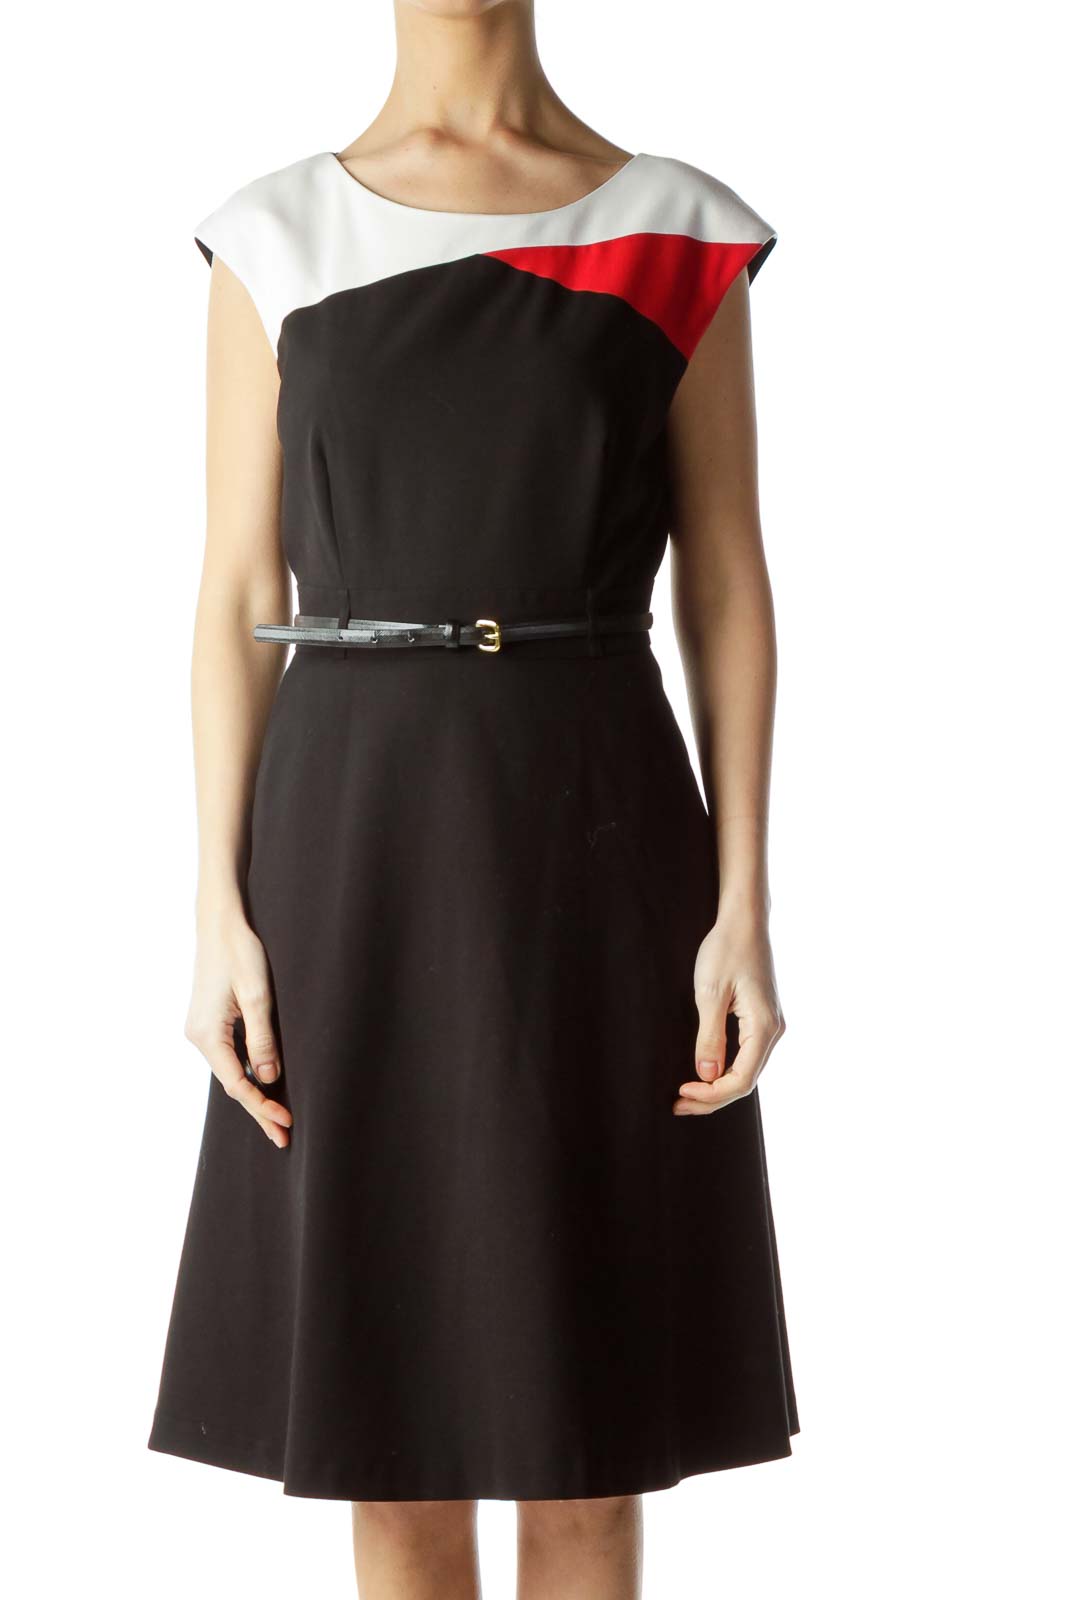 Black Red Color Block Belted Work Dress Front